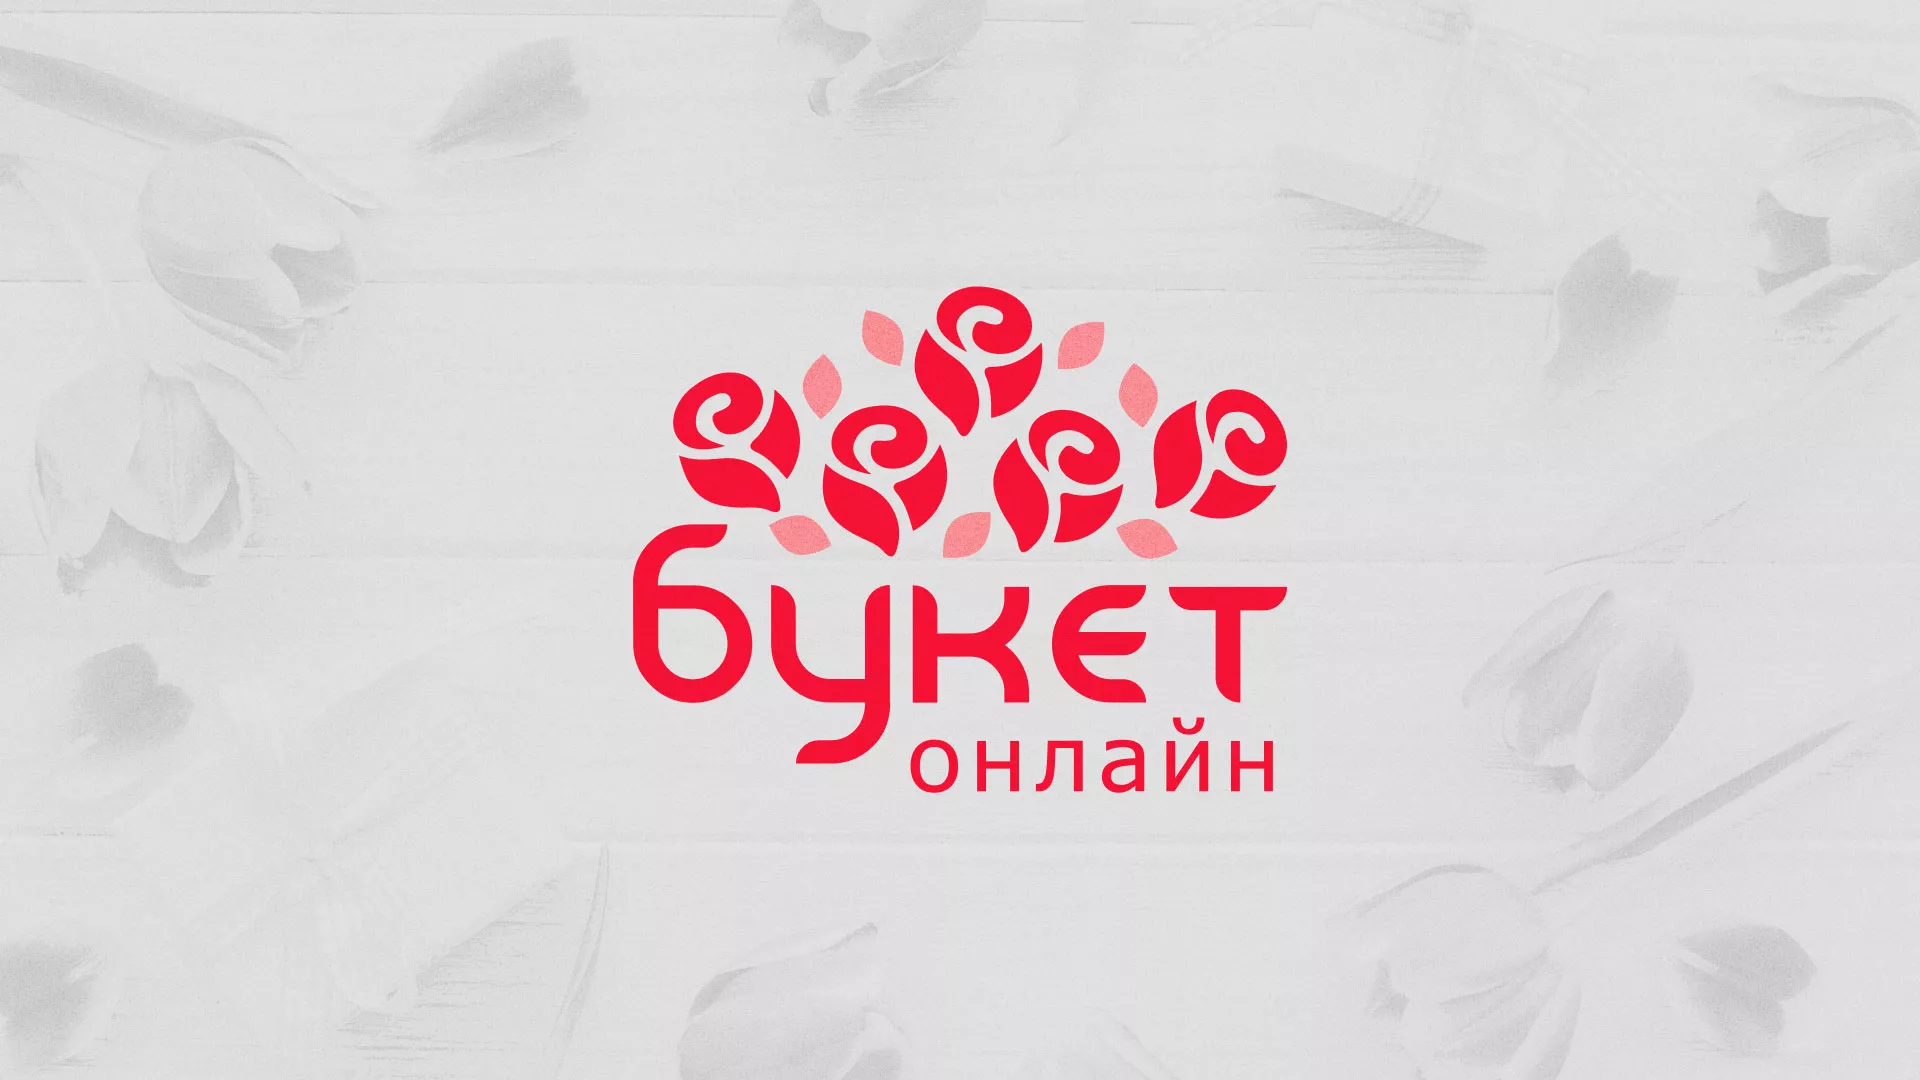 Создание интернет-магазина «Букет-онлайн» по цветам в Верхнем Уфалее